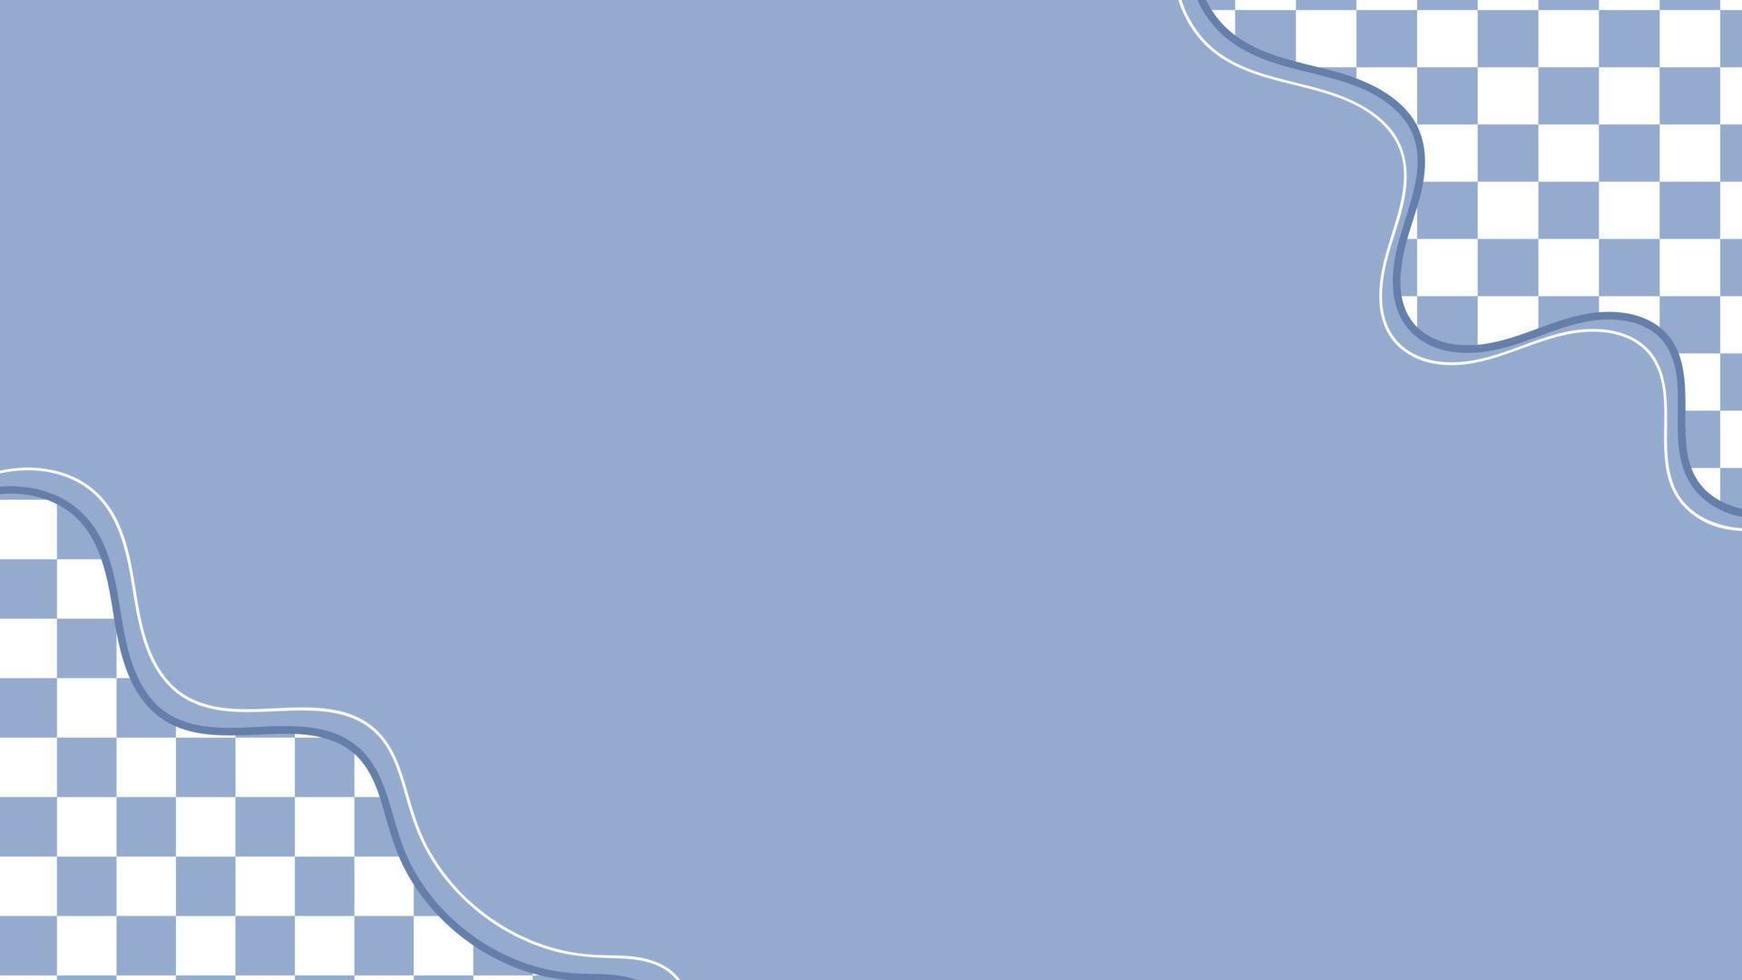 Ästhetisches süßes Pastellblau mit Schachbrett, Damedekorationsrahmen-Hintergrundillustration, perfekt für Tapete, Hintergrund, Postkarte, Banner vektor